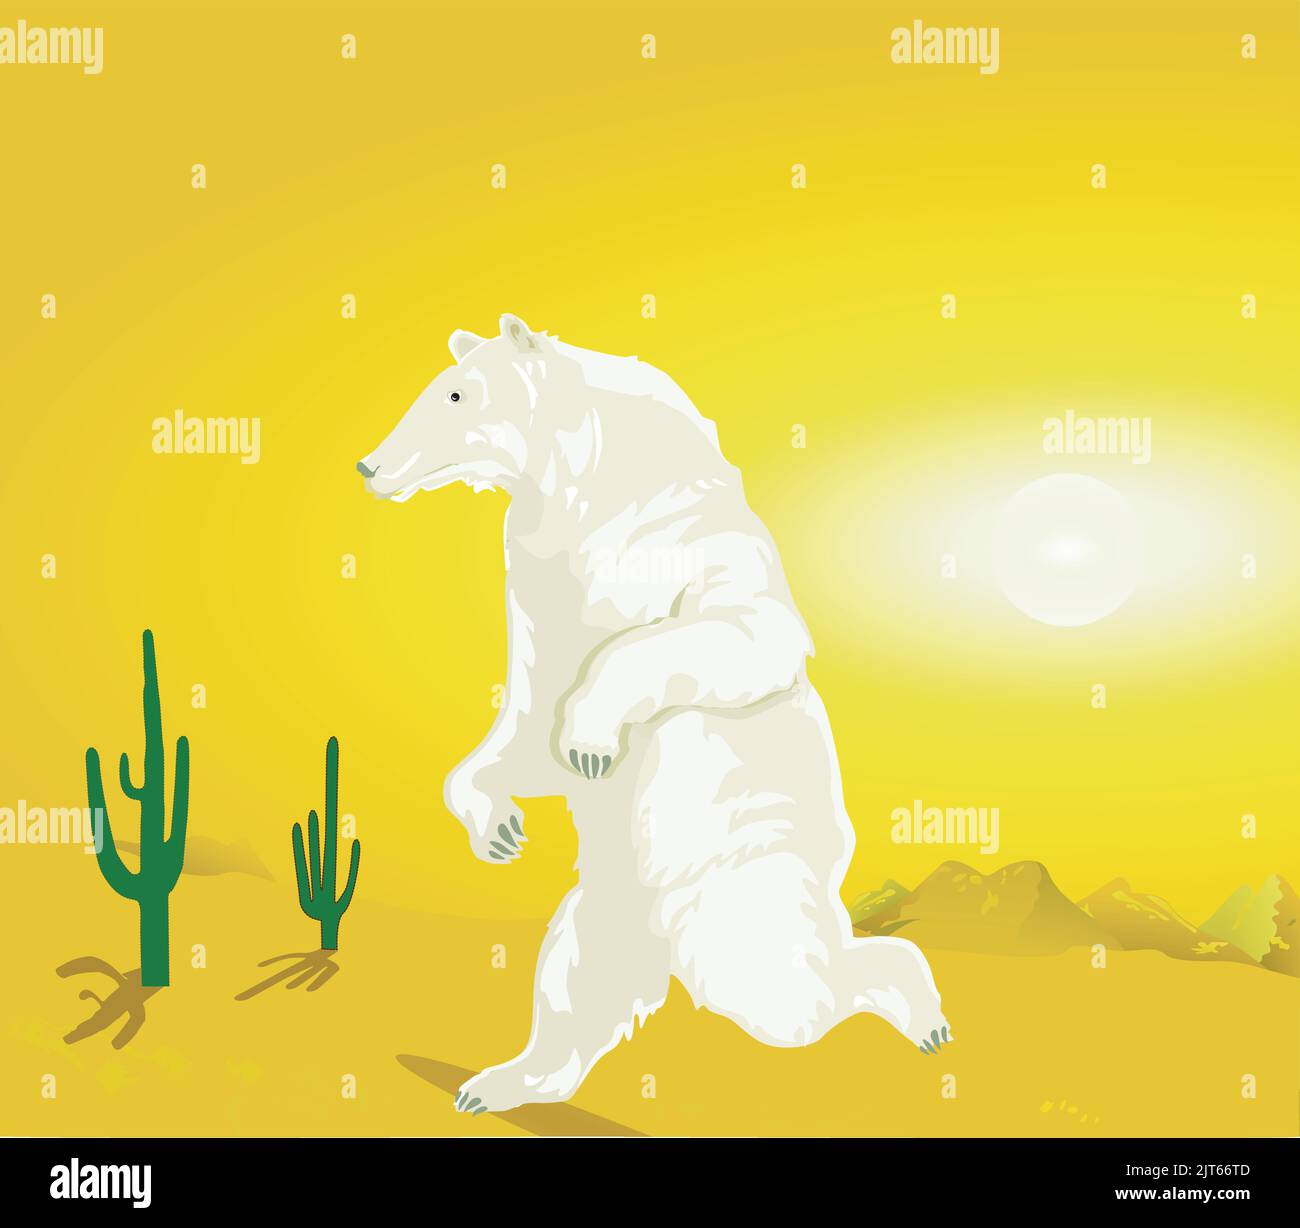 Polar bear in the desert, global warming illustration Stock Vector